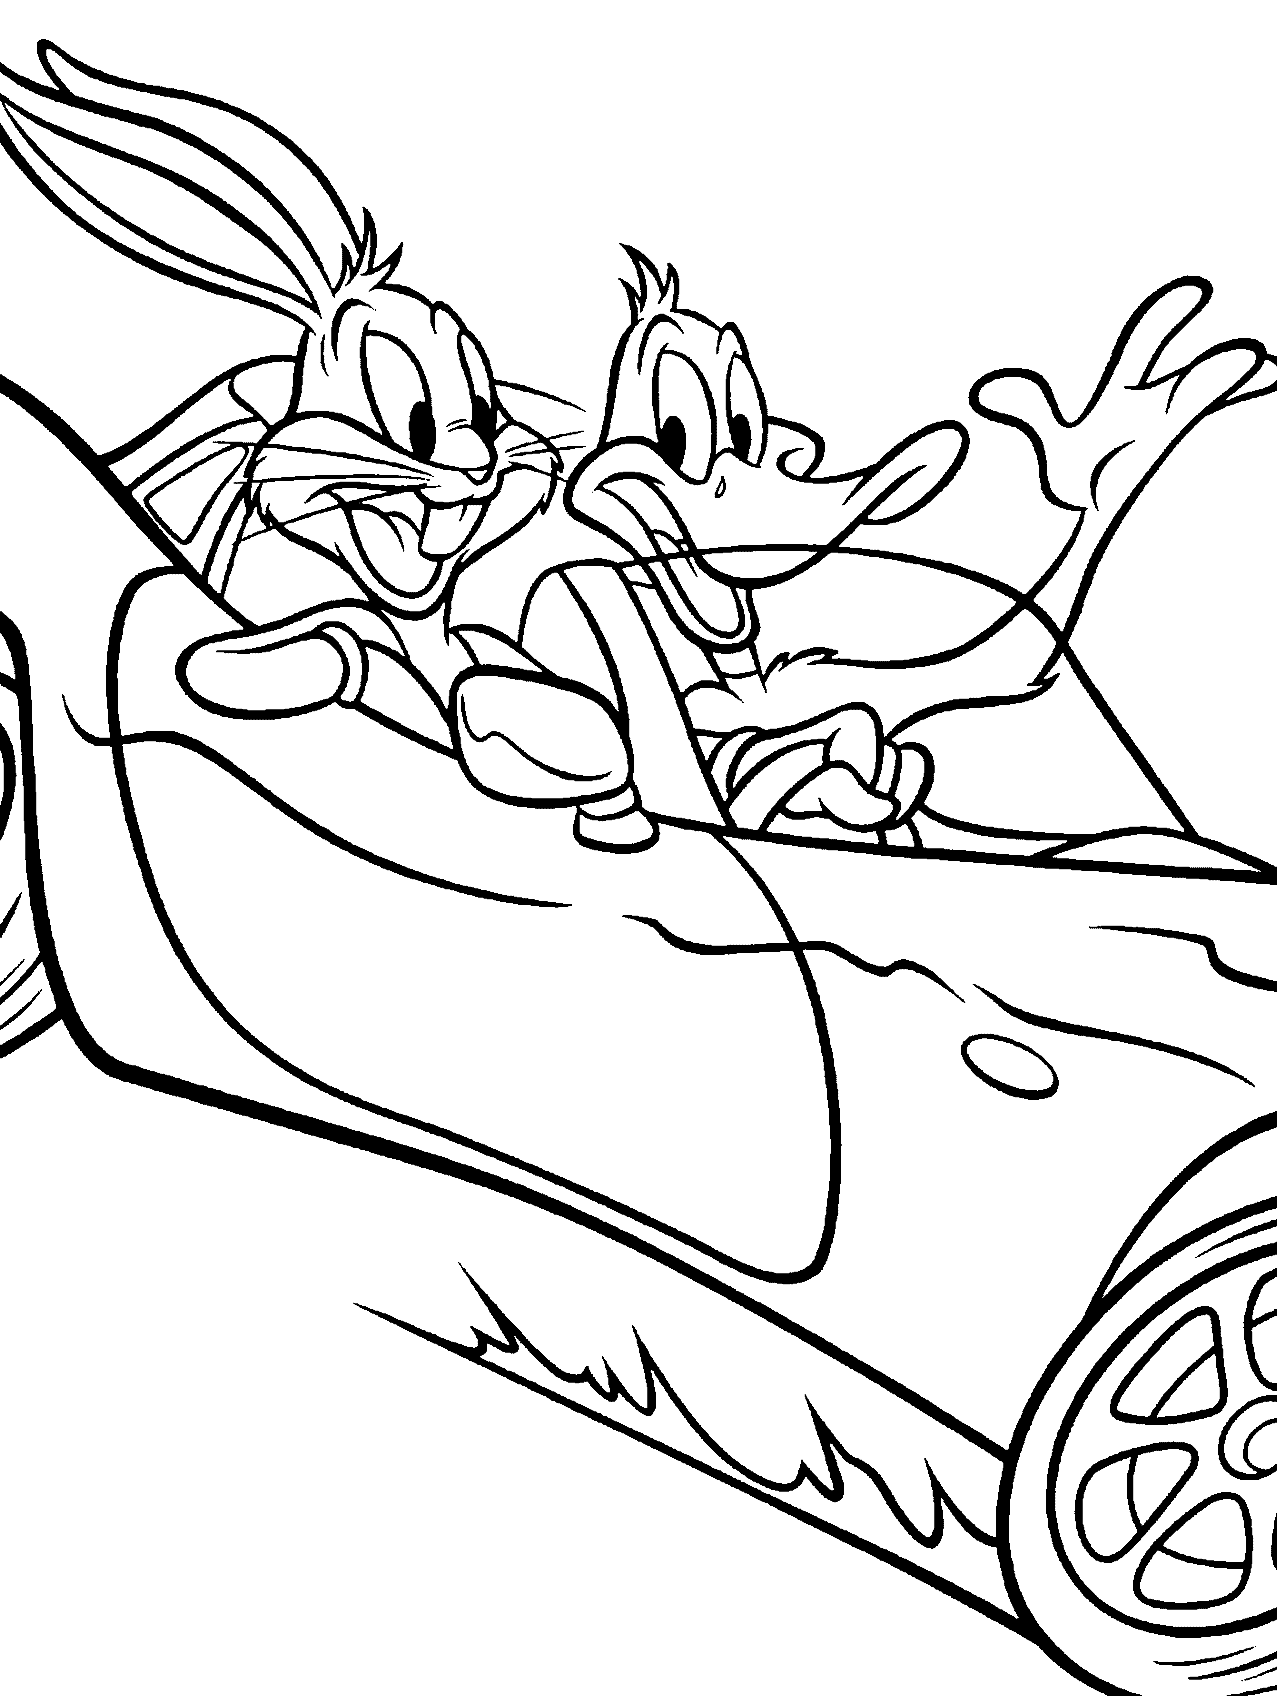 Kleurplaat Daffy Duck en Bugs Bunny